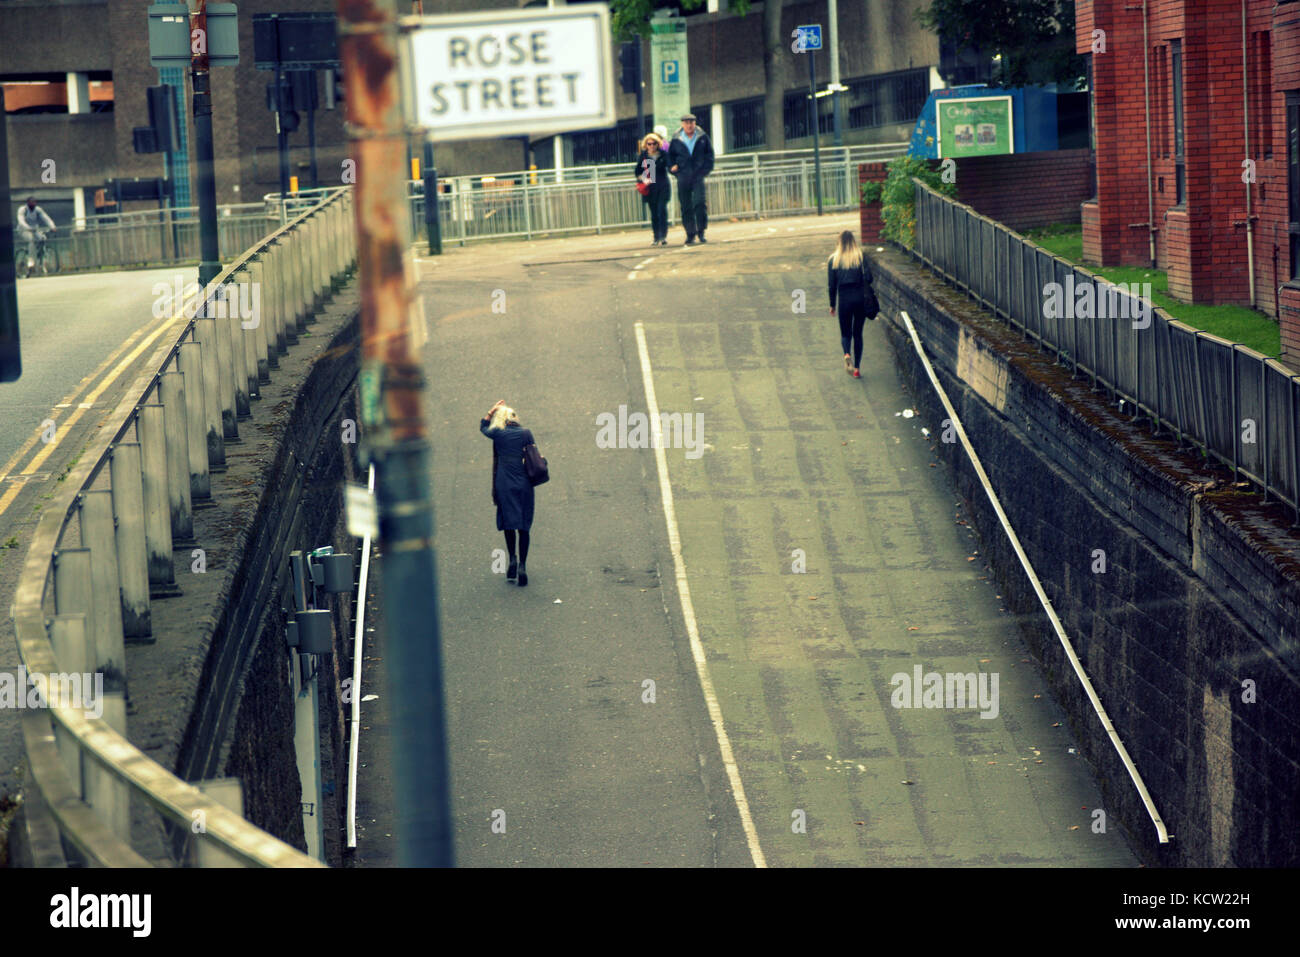 Rose street sottopassaggio cityscape camminare singoli scena urbana brutalism in calcestruzzo Foto Stock